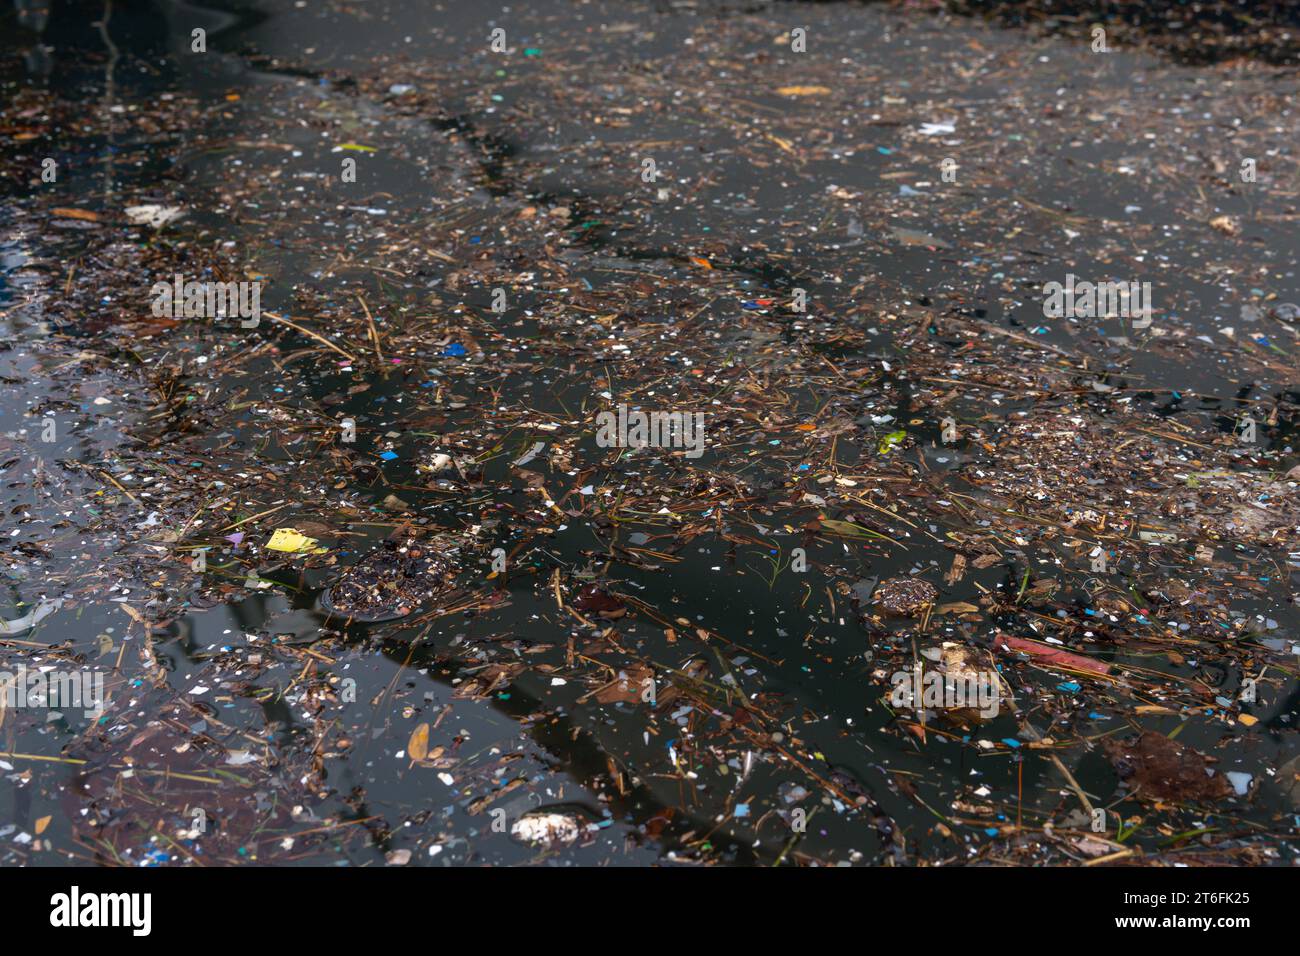 Primo piano del riflesso del mare in un porto con pezzi di plastica e alghe marine. Immagine concettuale dell'inquinamento marino Foto Stock